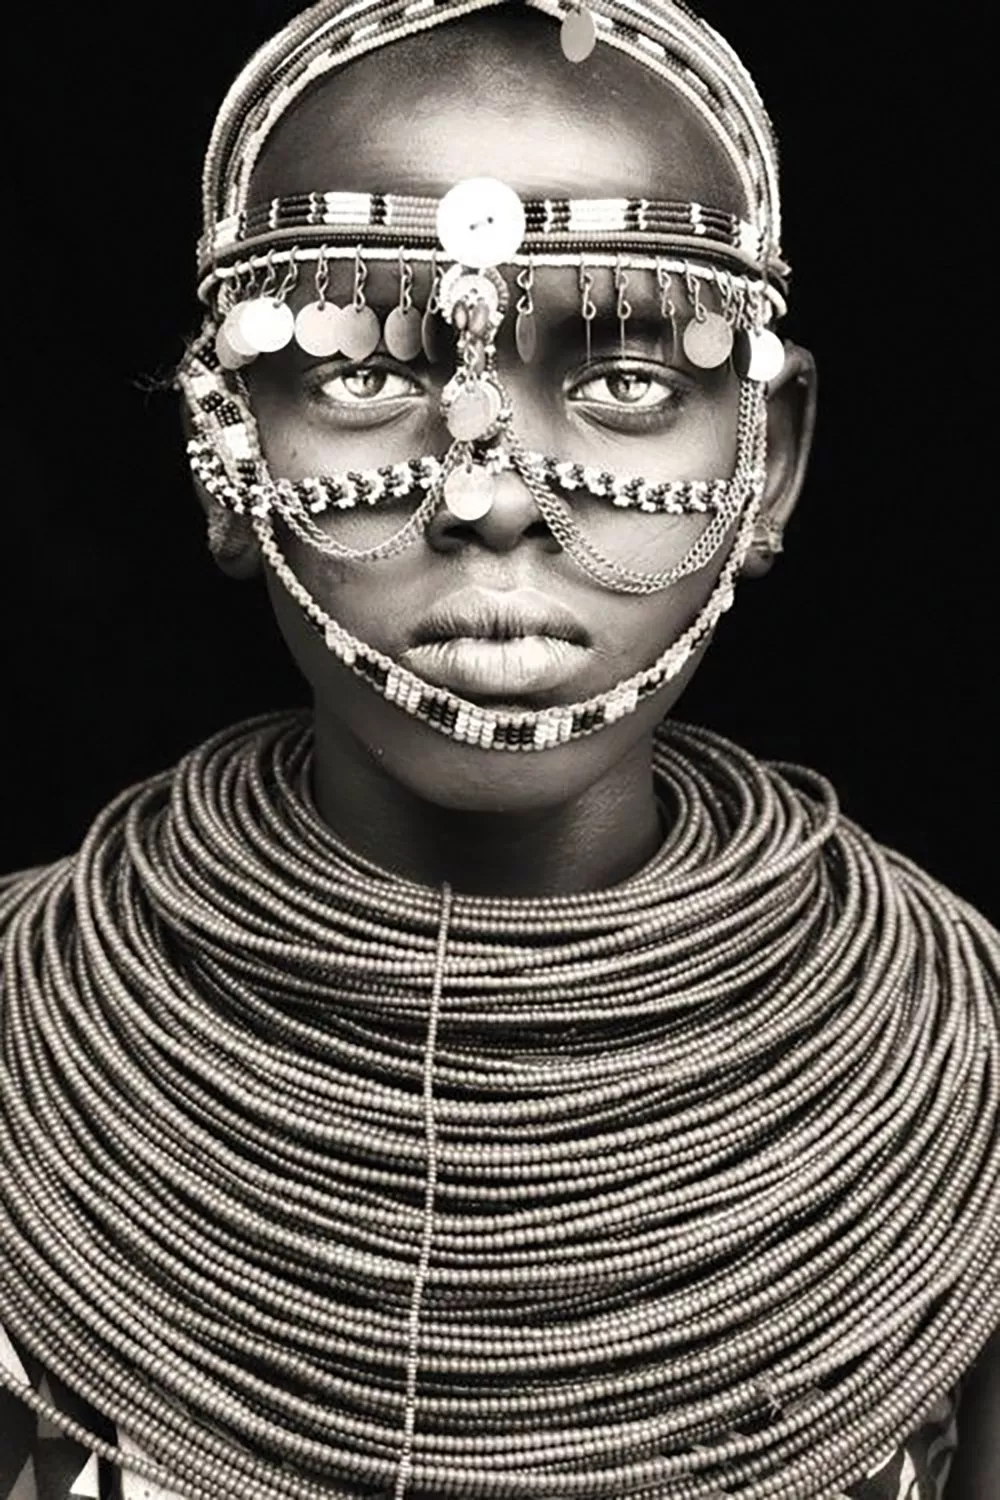 أسرار جمال المرأة الإفريقية التقليدية والتي ما زالت تُستخدم حتى الآن